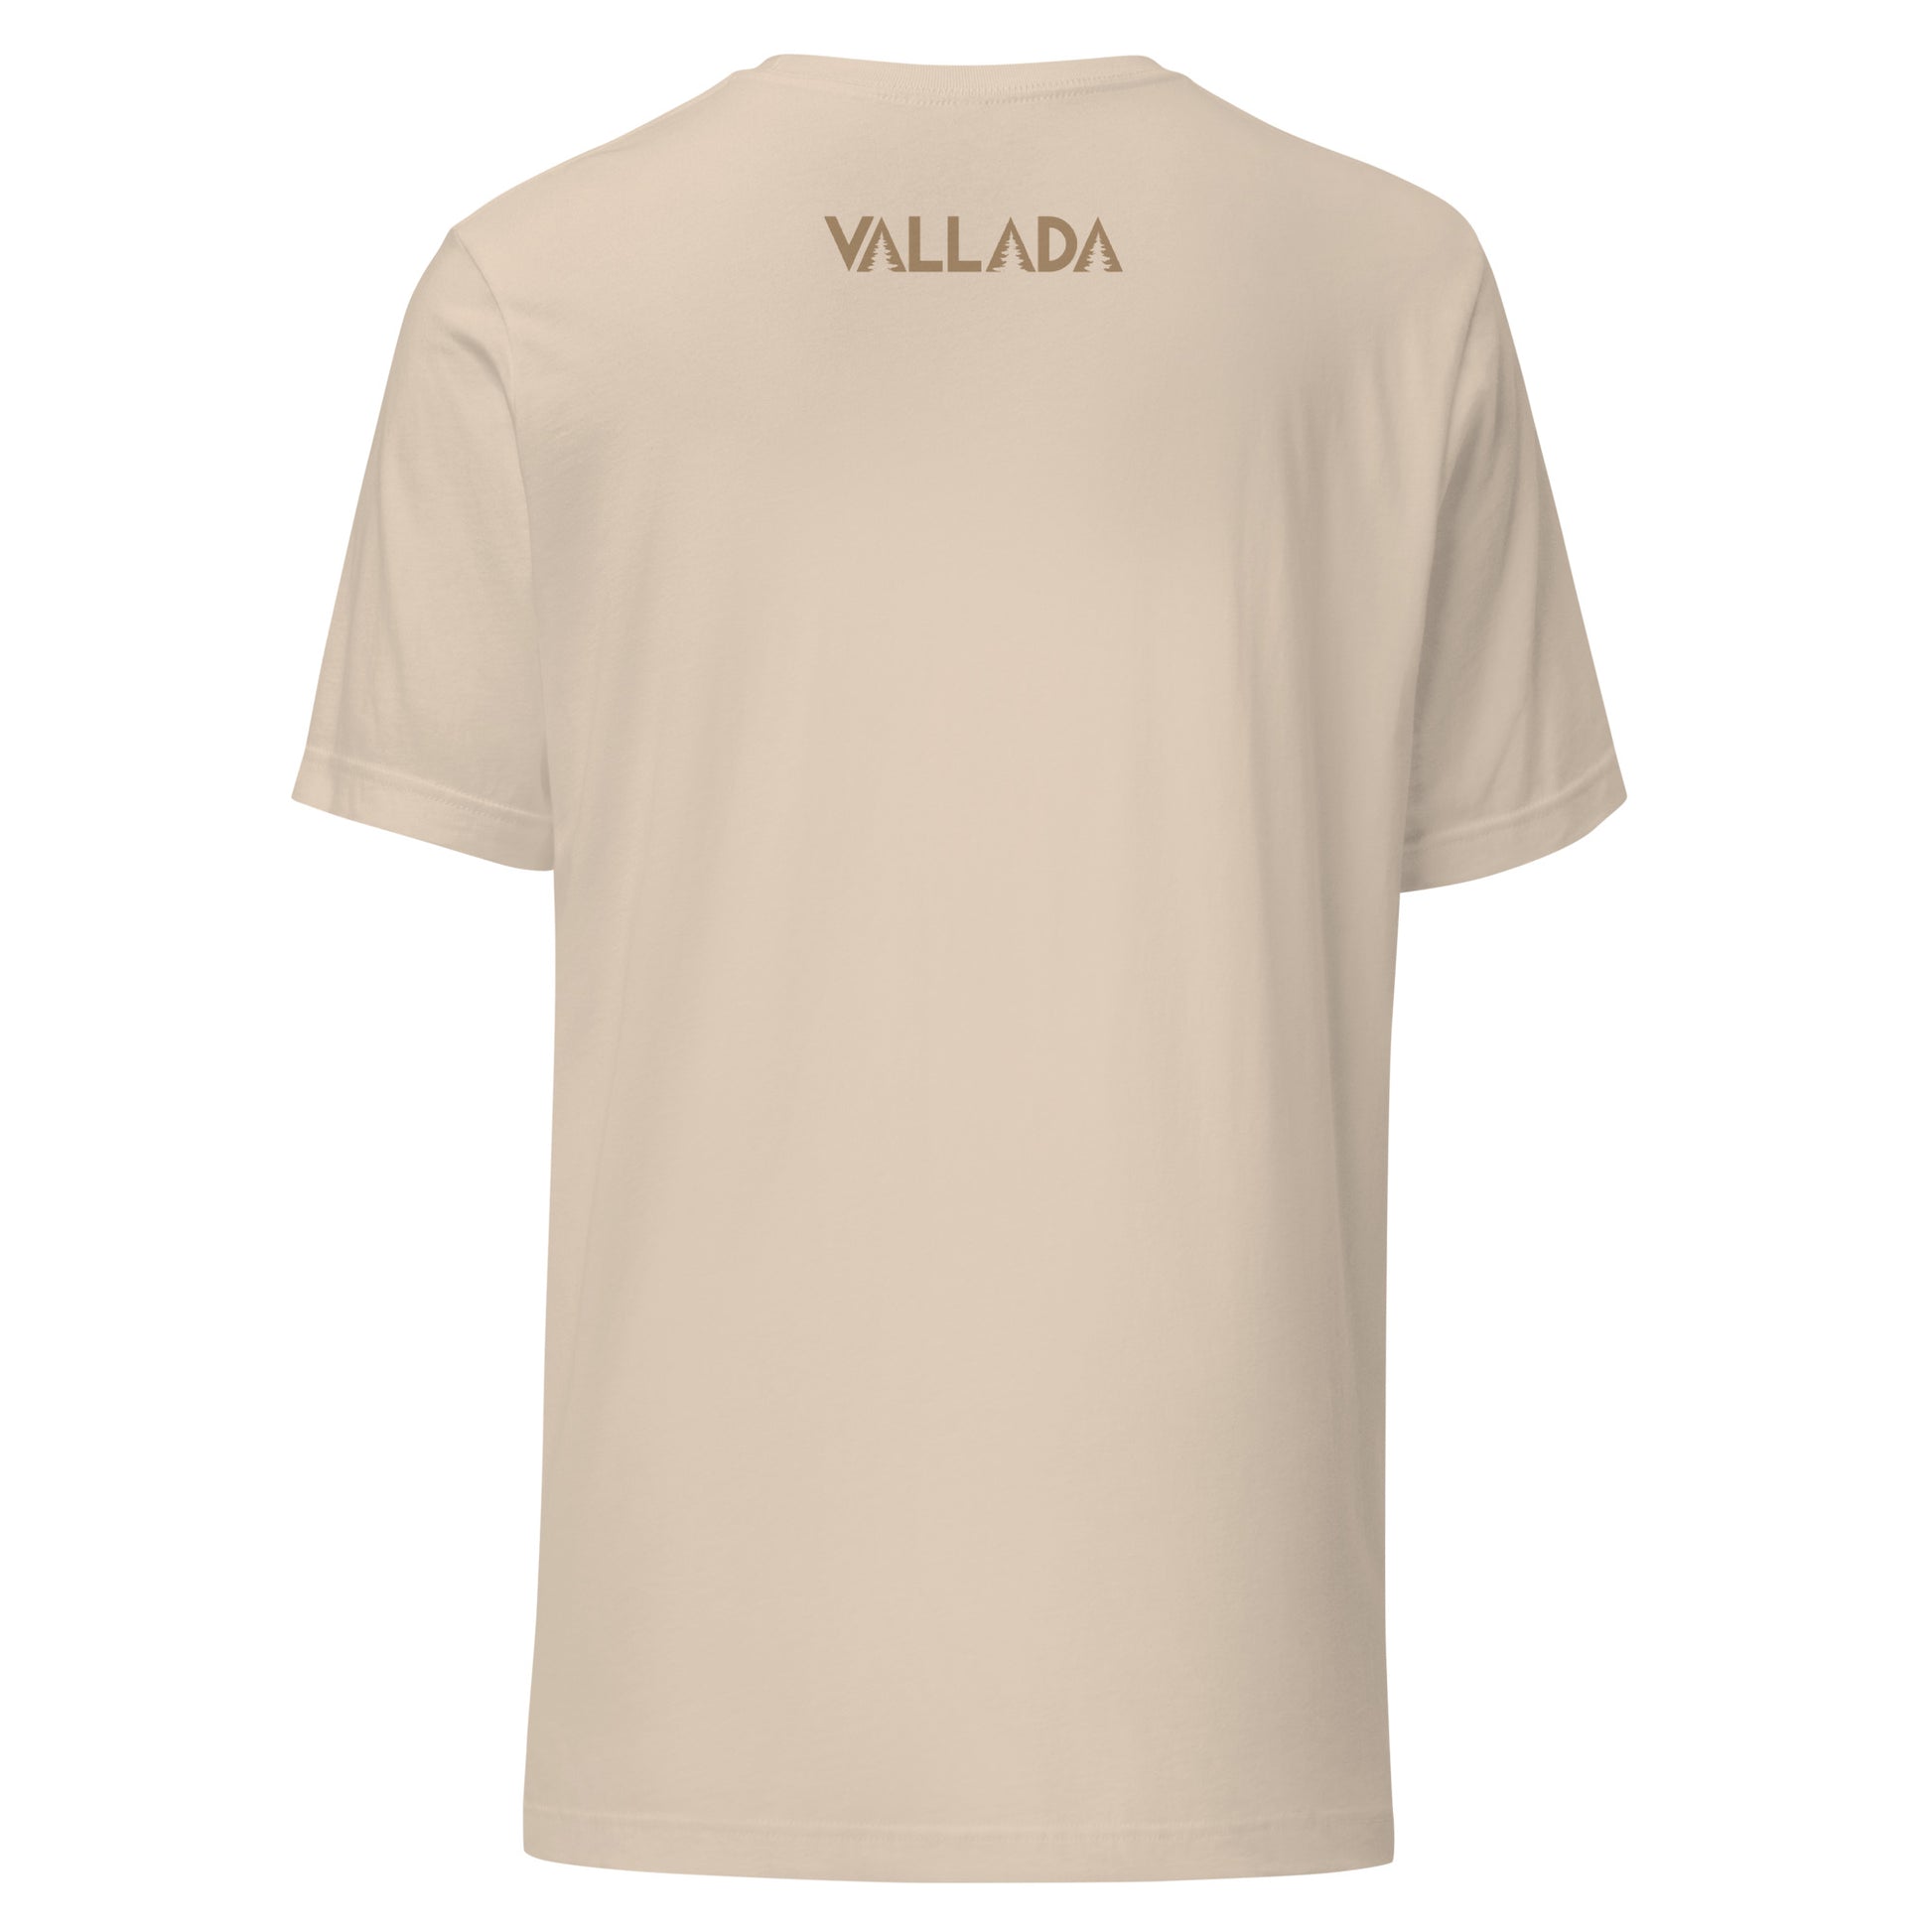 Rückenansicht crèmefarbenes T-Shirt mit Vallada-Logo